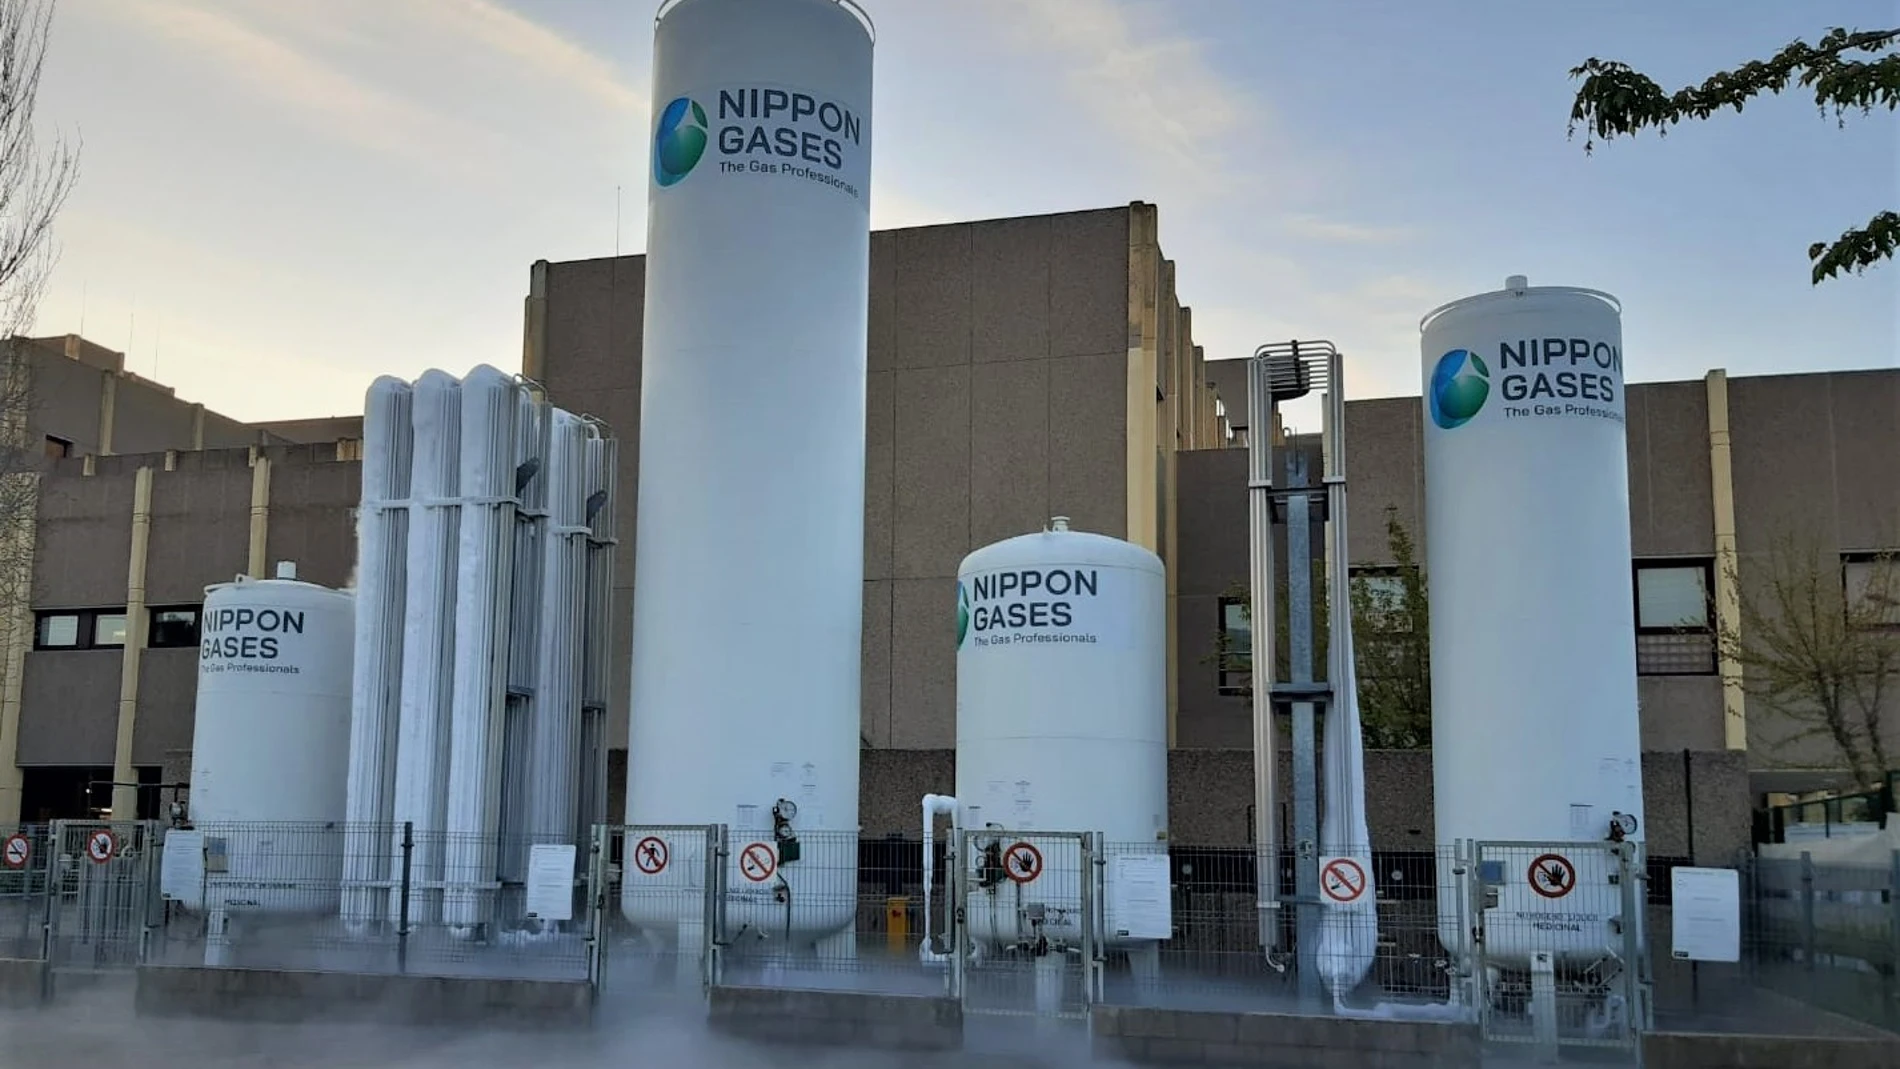 Instalaciones de Nippon Gases en un hospital de la Comunidad de Madrid